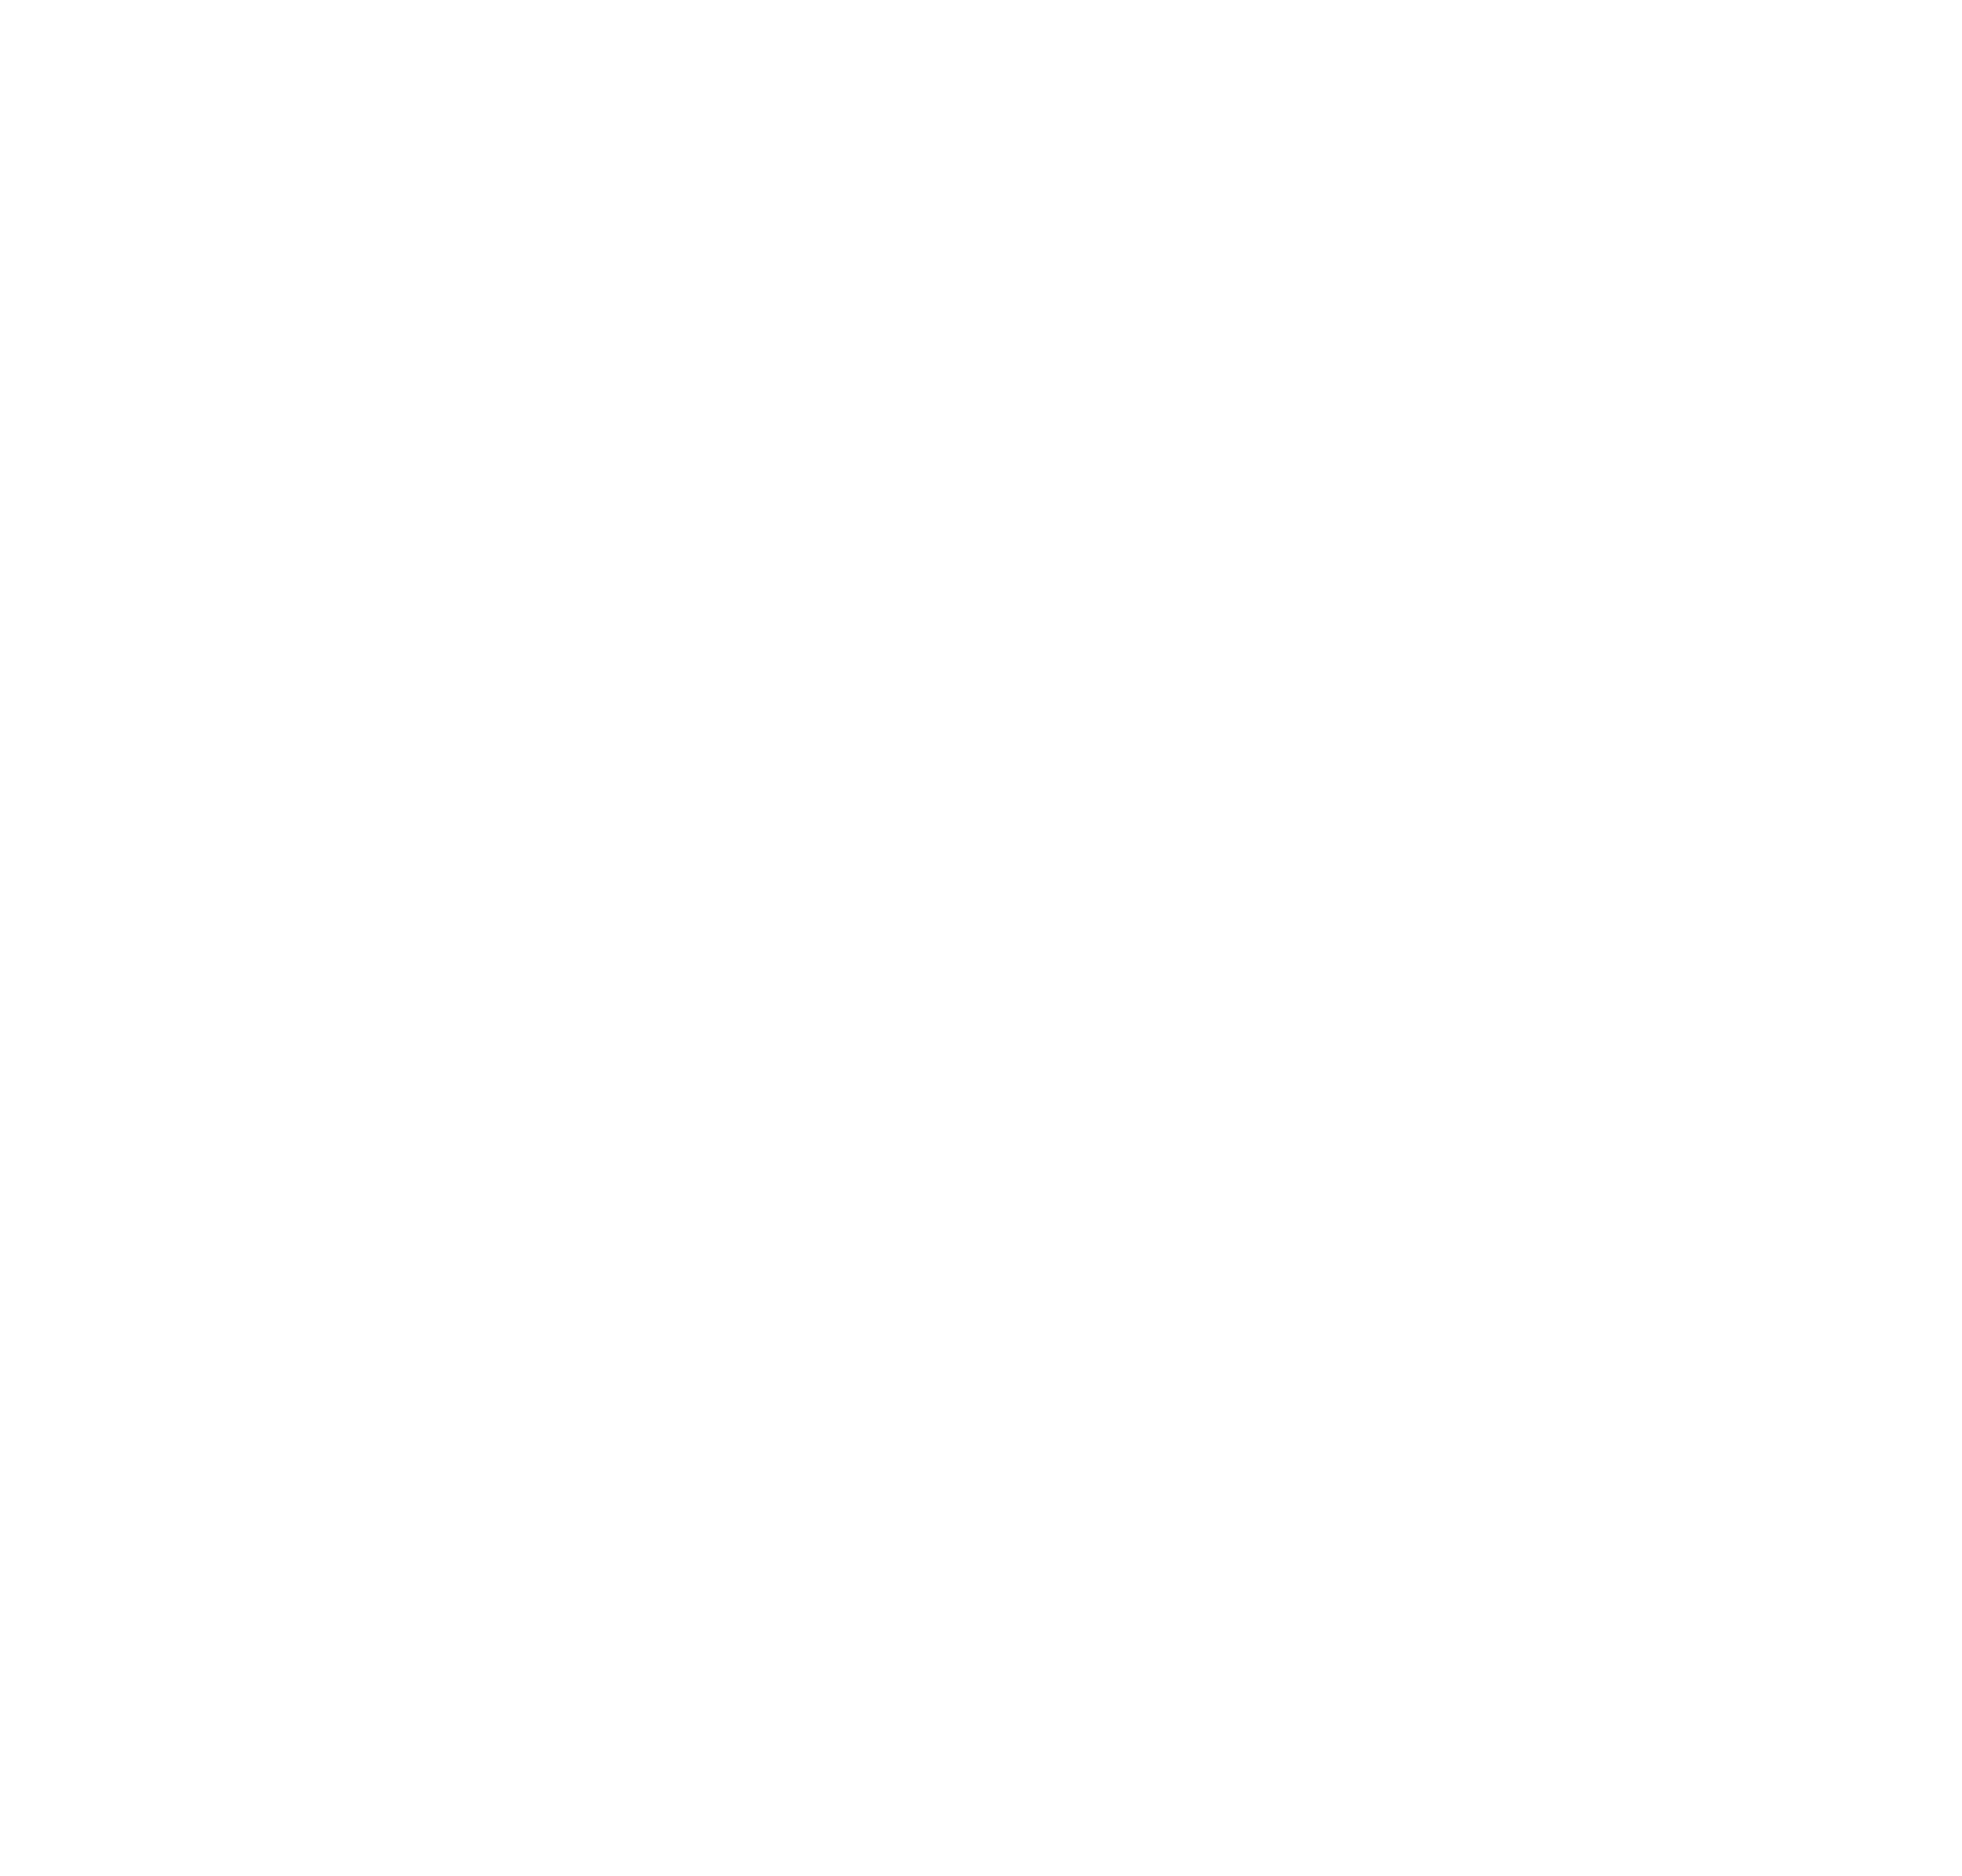 UNESCO Bangkok